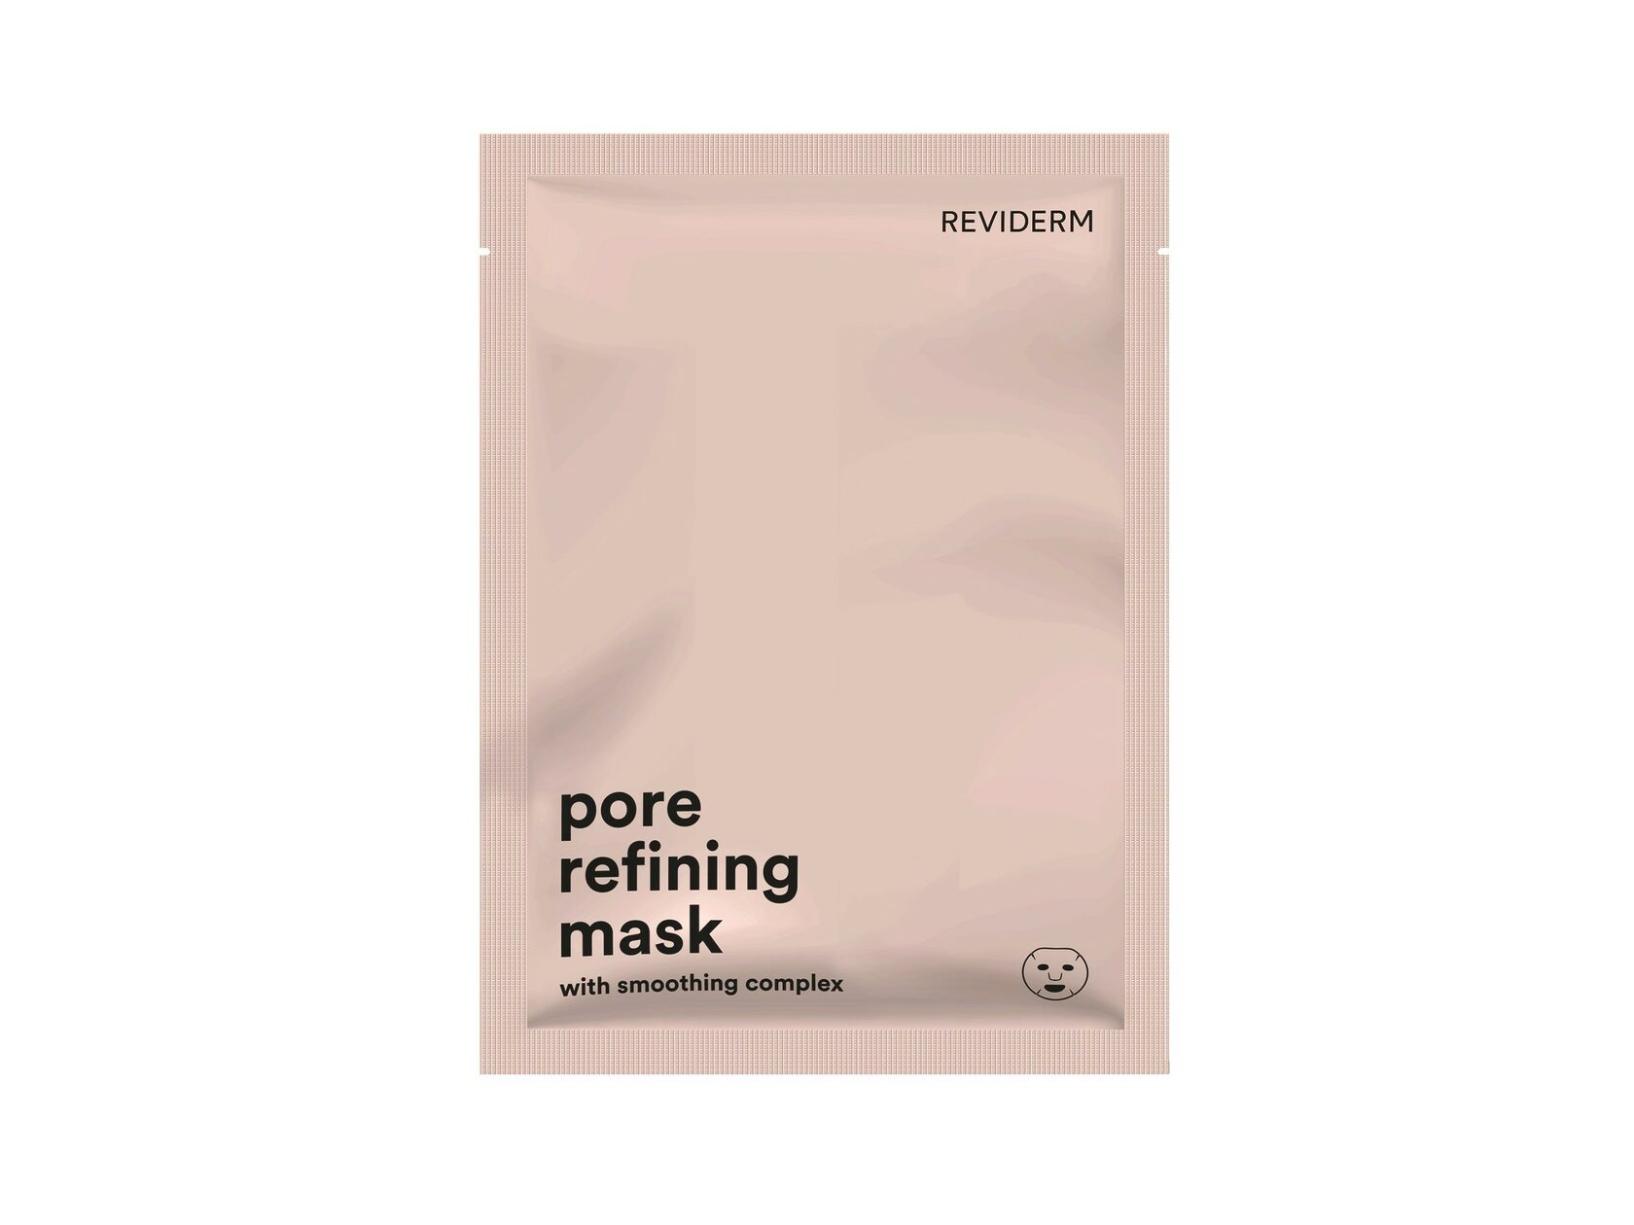 Reviderm Pore refining mask Маска для очищения пор, 5 шт.